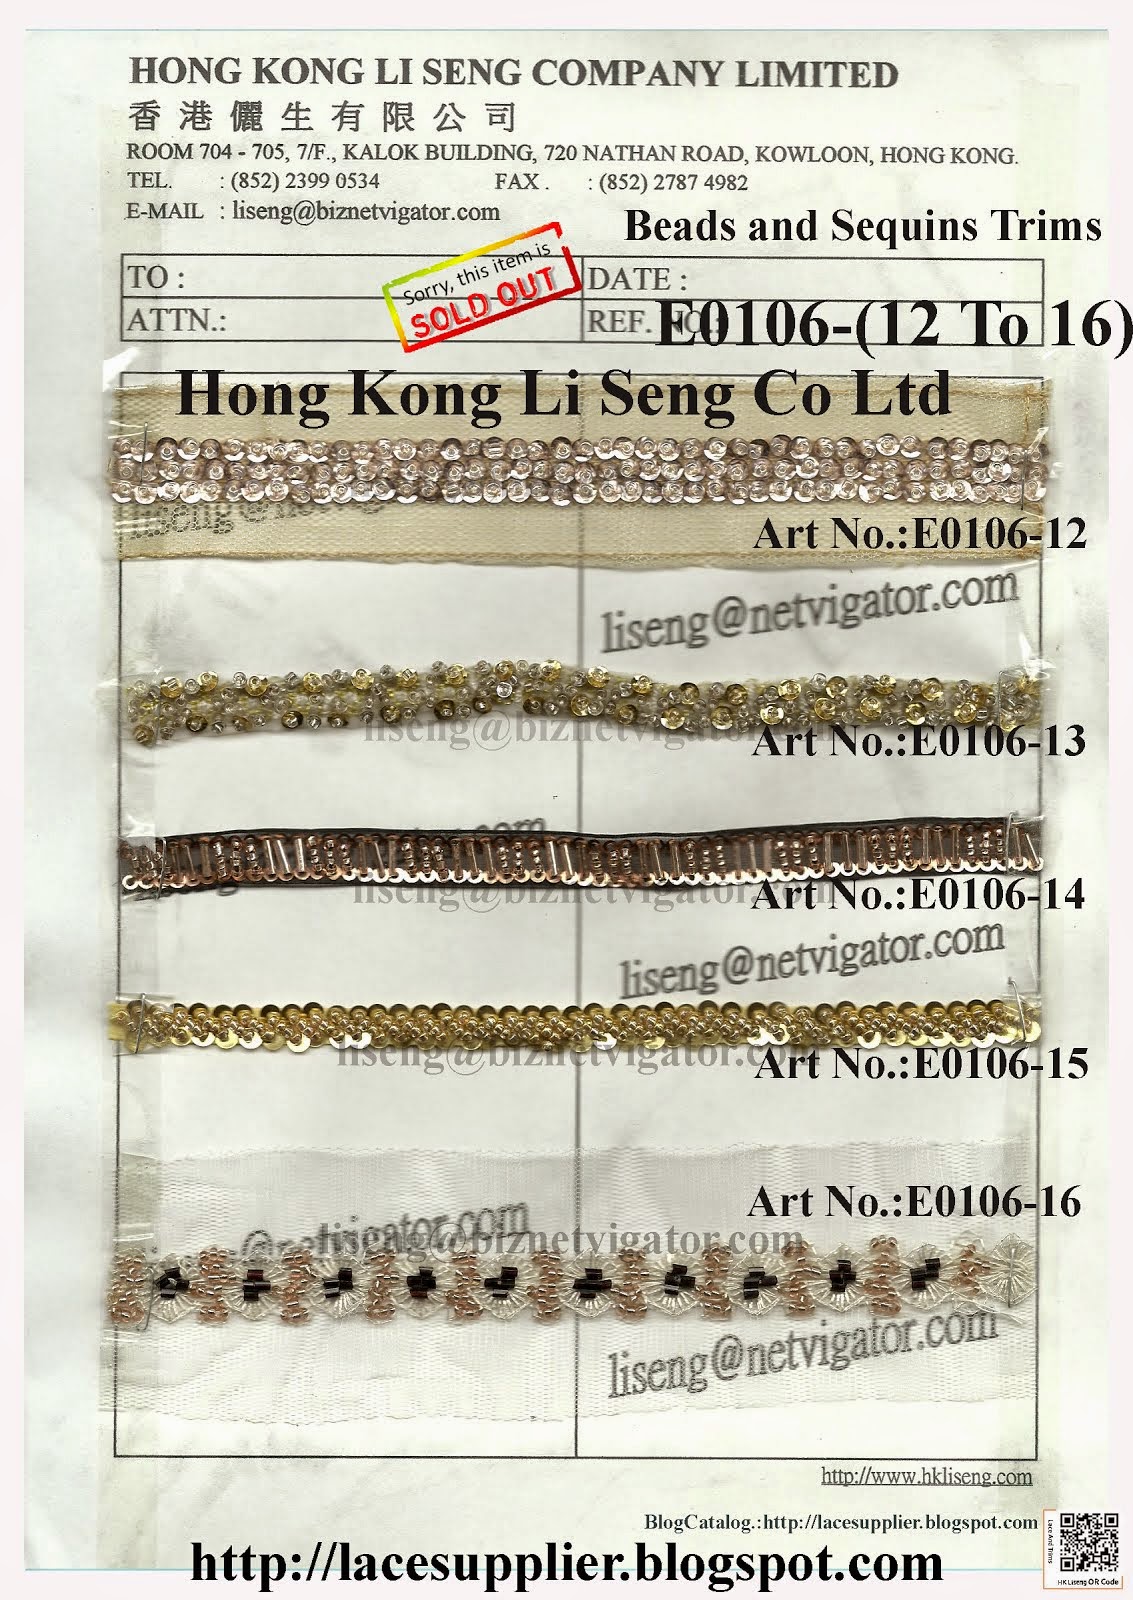 Beads and Sequins Trims Manufacturer - Hong Kong Li Seng Co Ltd